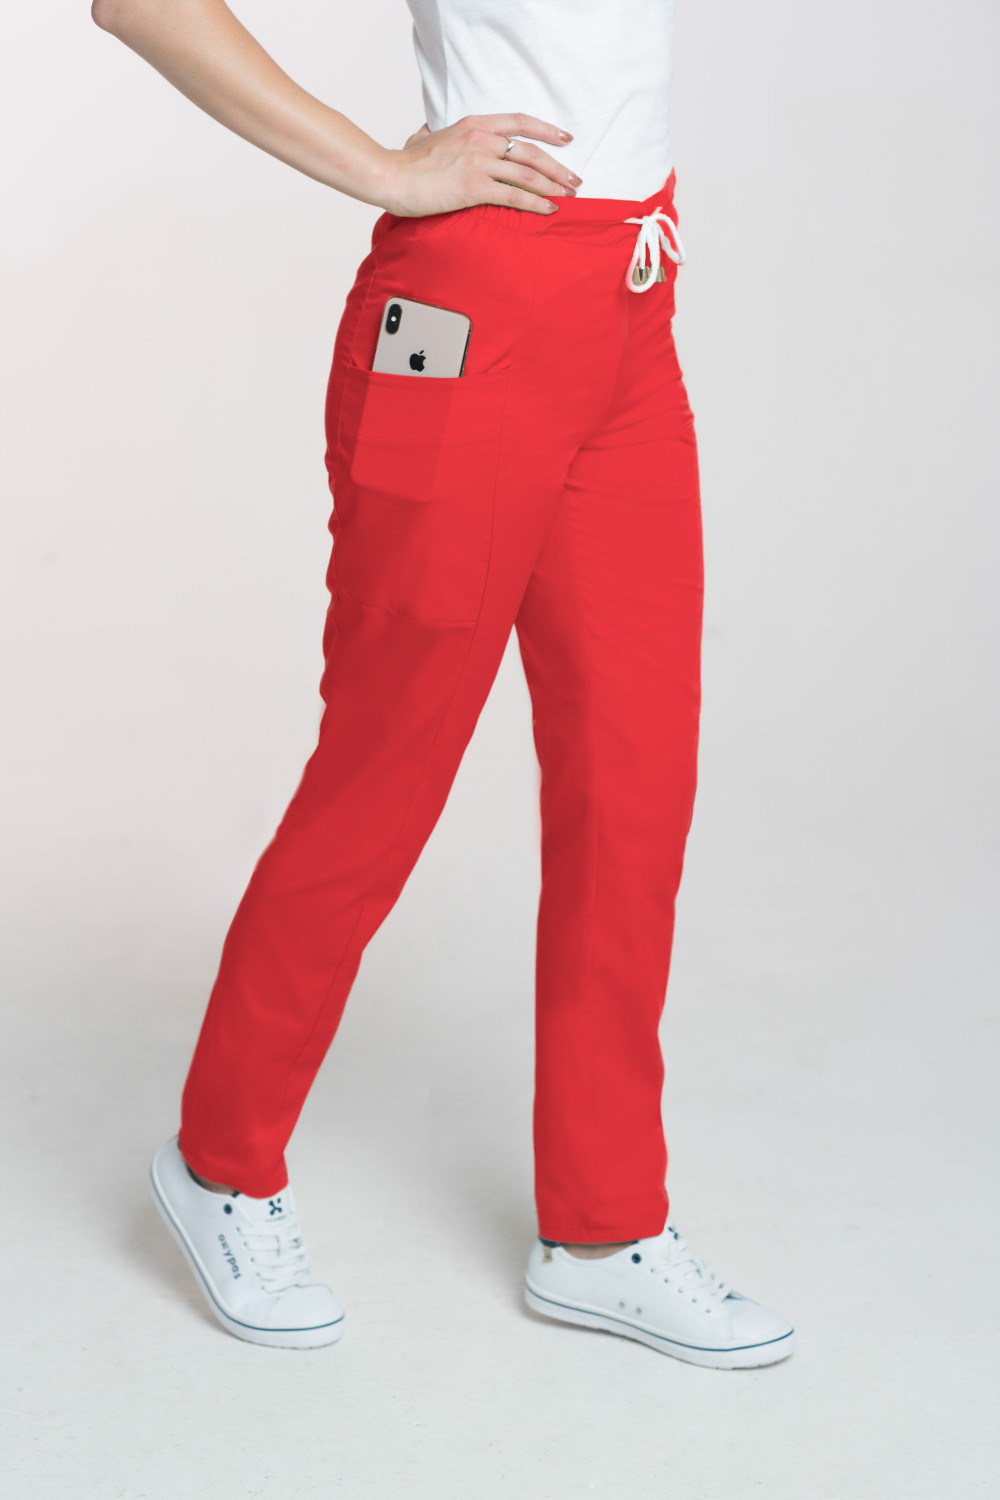 Spodnie kosmetyczne damskie M-200 - czerwone